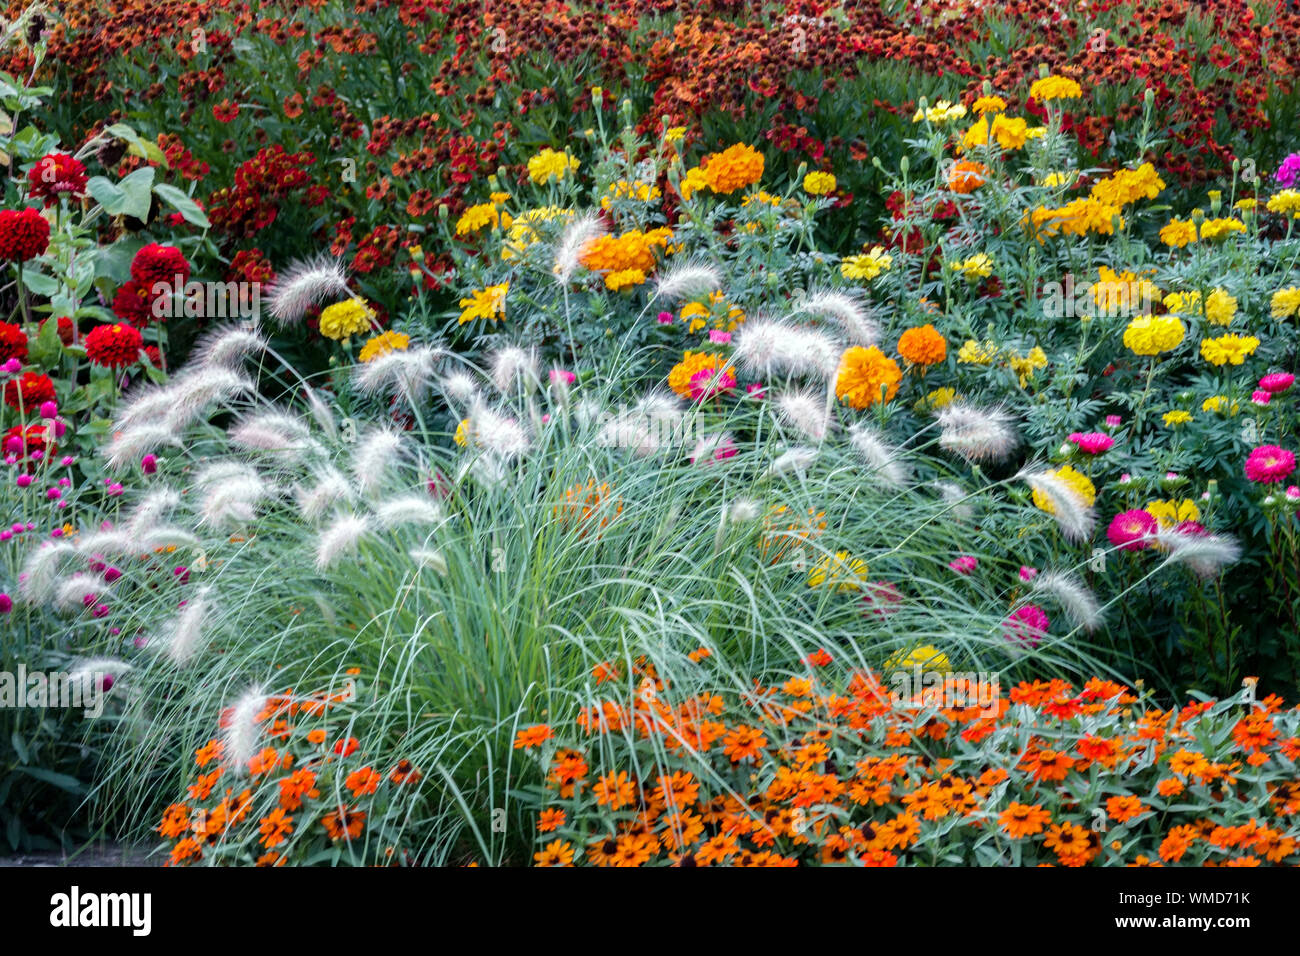 Schönen Garten Grenze, bunte Blumen, gemischt jährlichen und mehrjährigen Pflanzen Pflanzen im Sommer Blumenbeet, Pennisetum, Zinnien, Sneezeweeds Stockfoto